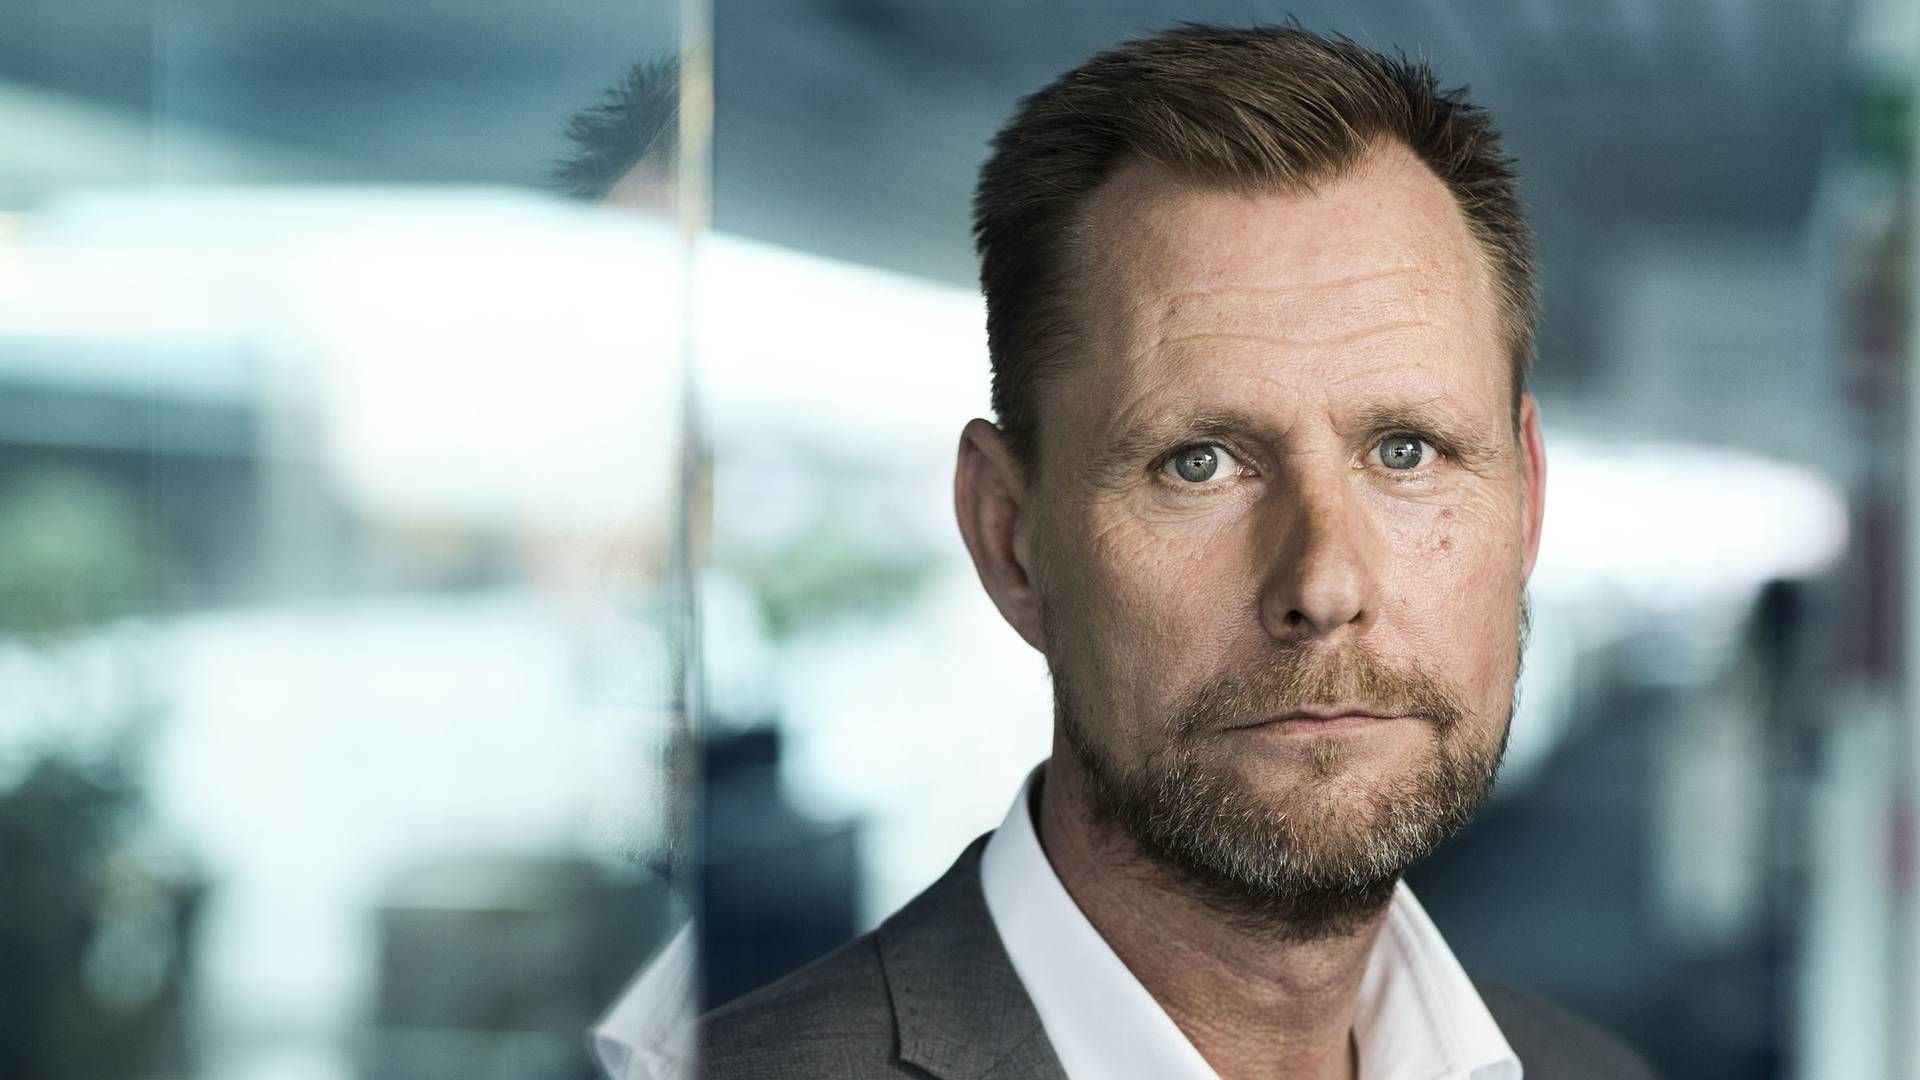 Salgsdirektør for reklamesalg hos TV 2, Peter Olafsson. | Foto: TV 2 DANMARK